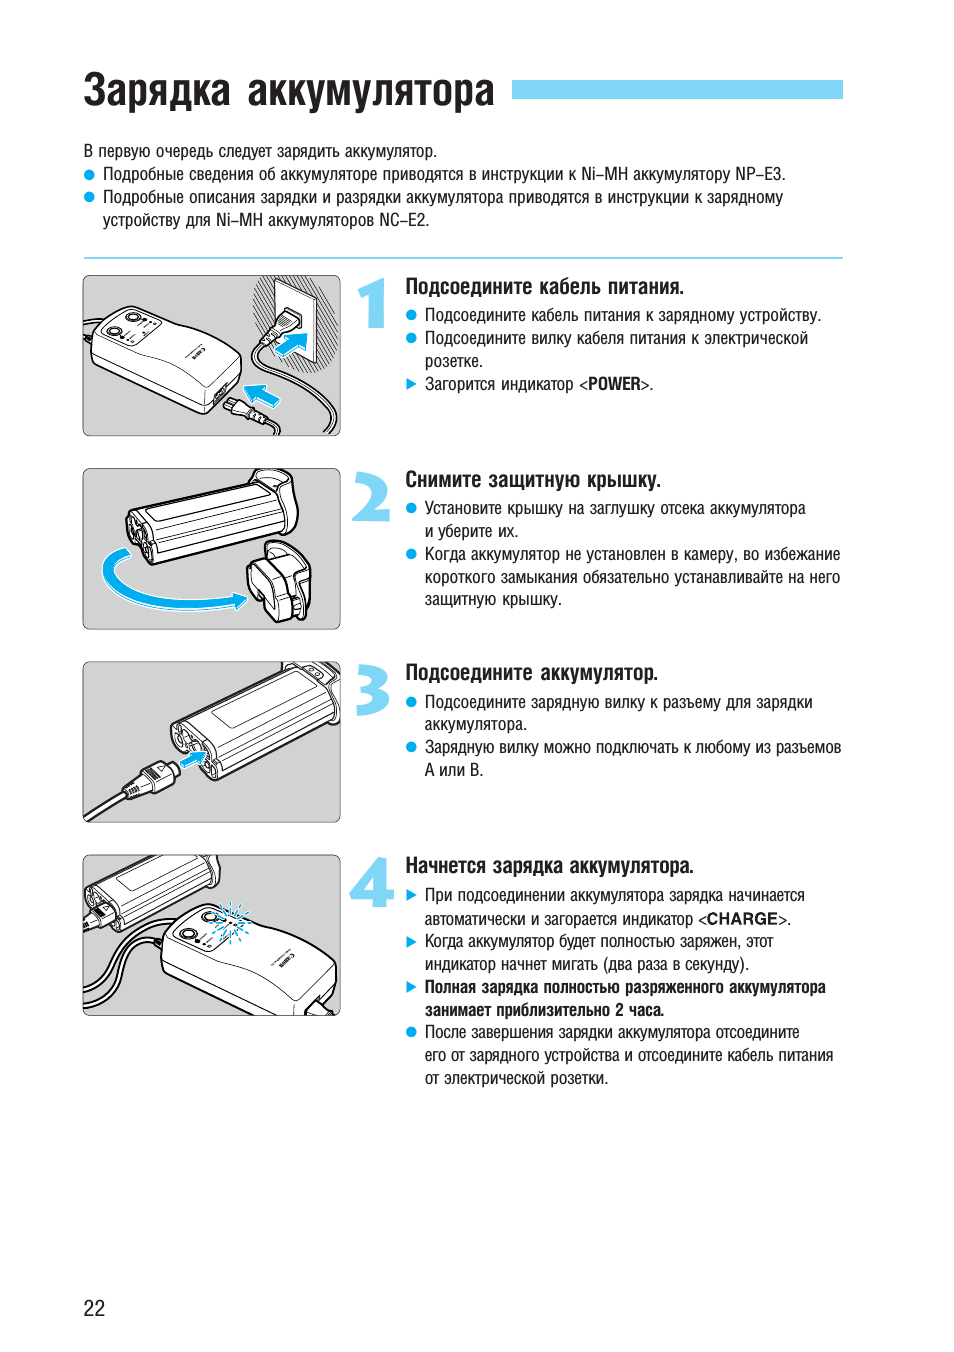 Как правильно заряжать аккумулятор автомобиля -рекомендации: способы и алгоритм зарядки